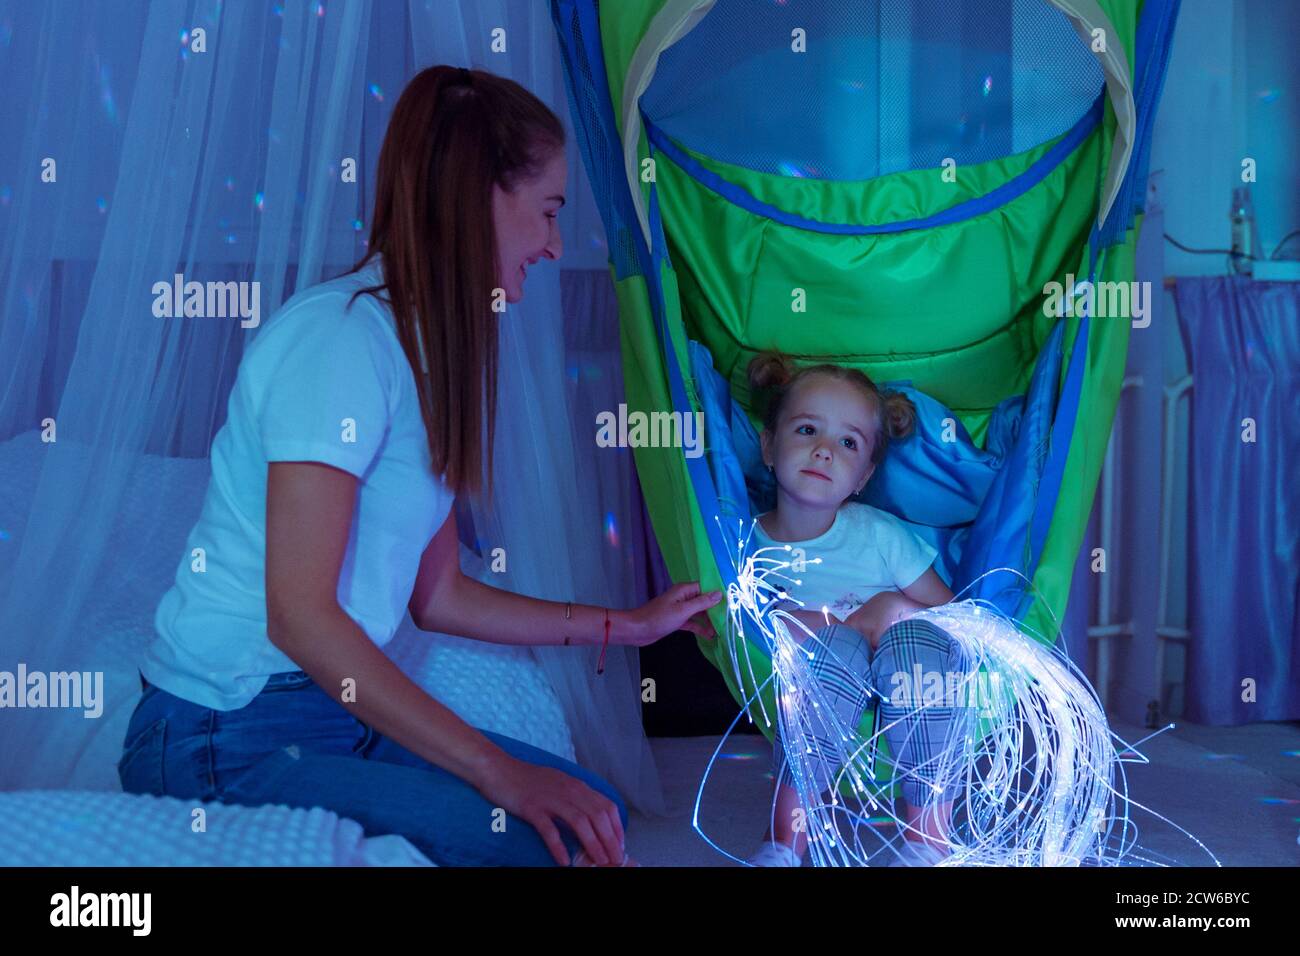 Kind und Therapeut im sensorisch anregenden Raum, snoezelen. Autistisches Kind, das während der Therapiesitzung mit farbigen Lichtern interagiert. Stockfoto